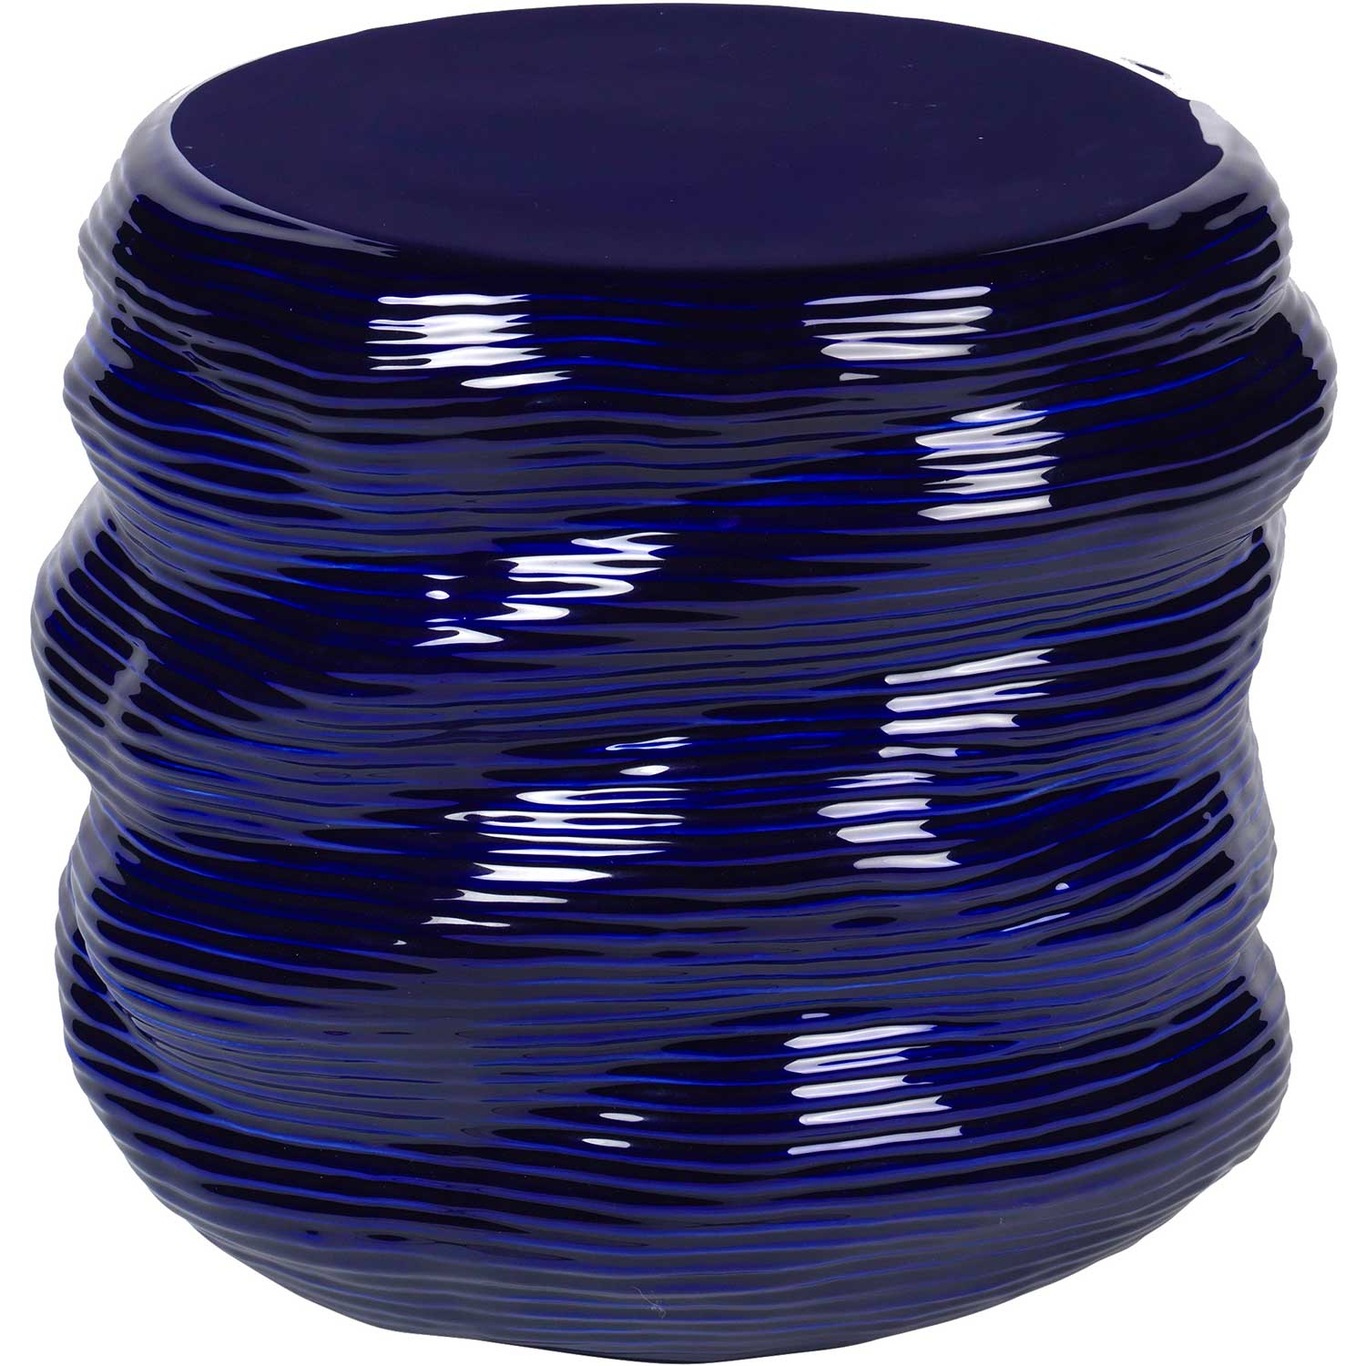 Earthernware Tisch, Astral Aura Dark Blue